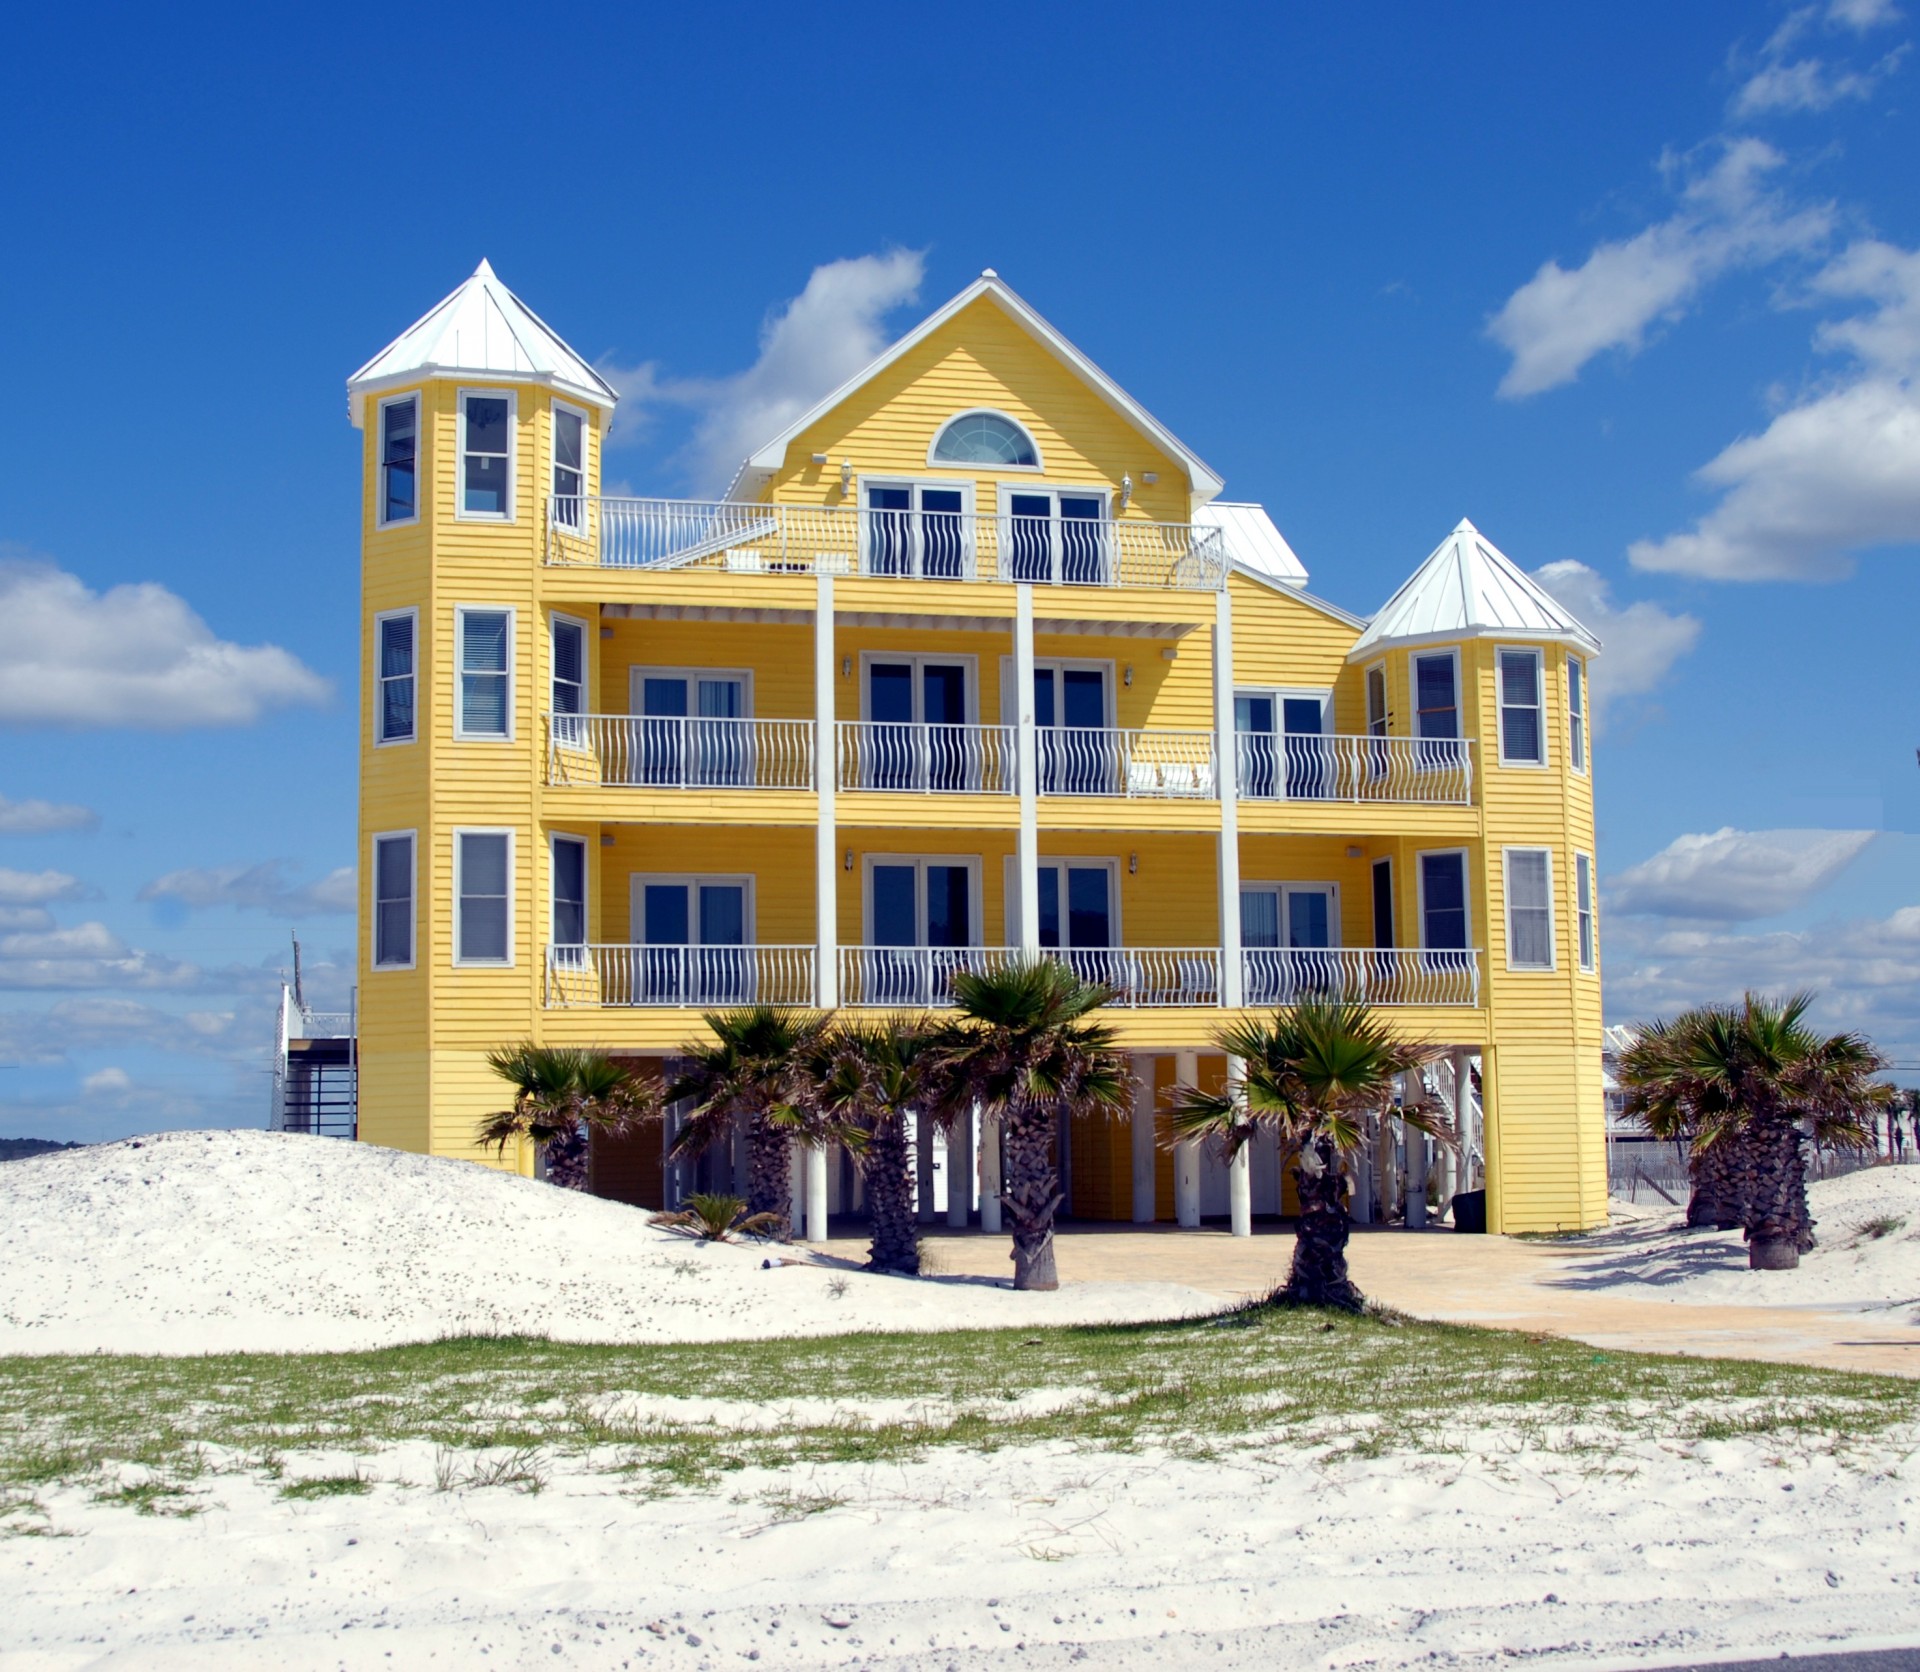 Florida Beach House